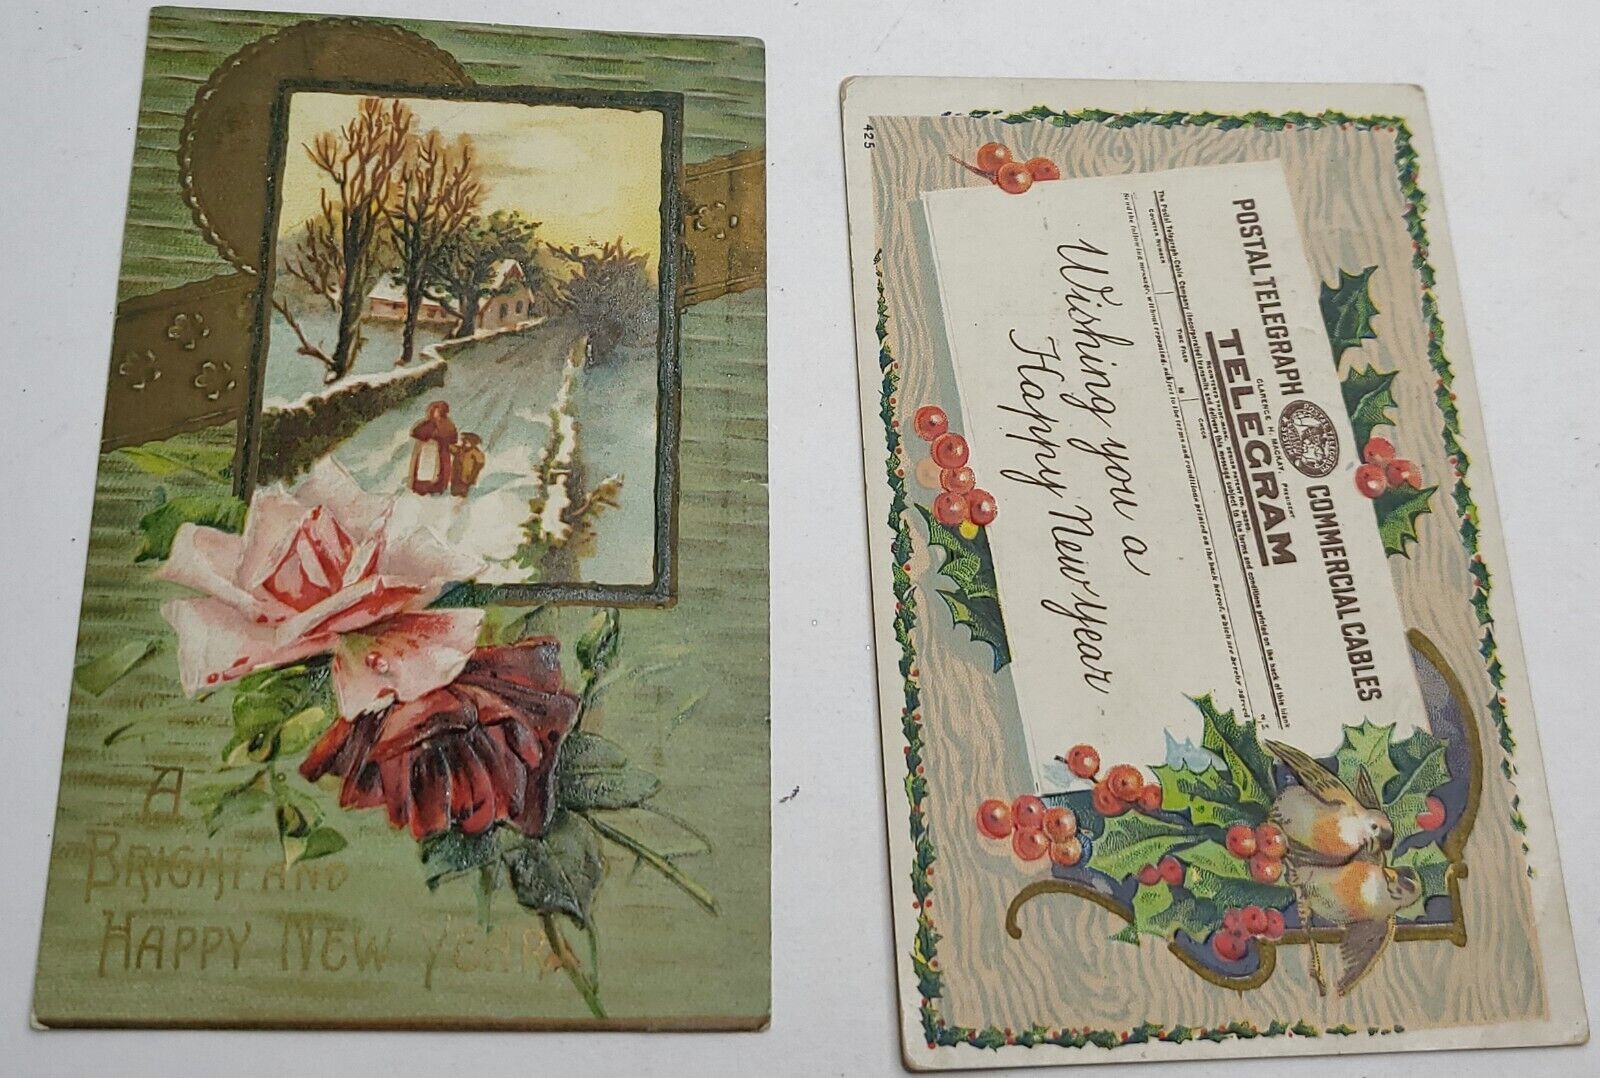 2 Vintage New Year Greetings Postcards Card Ephemera Embossed Roses Holly